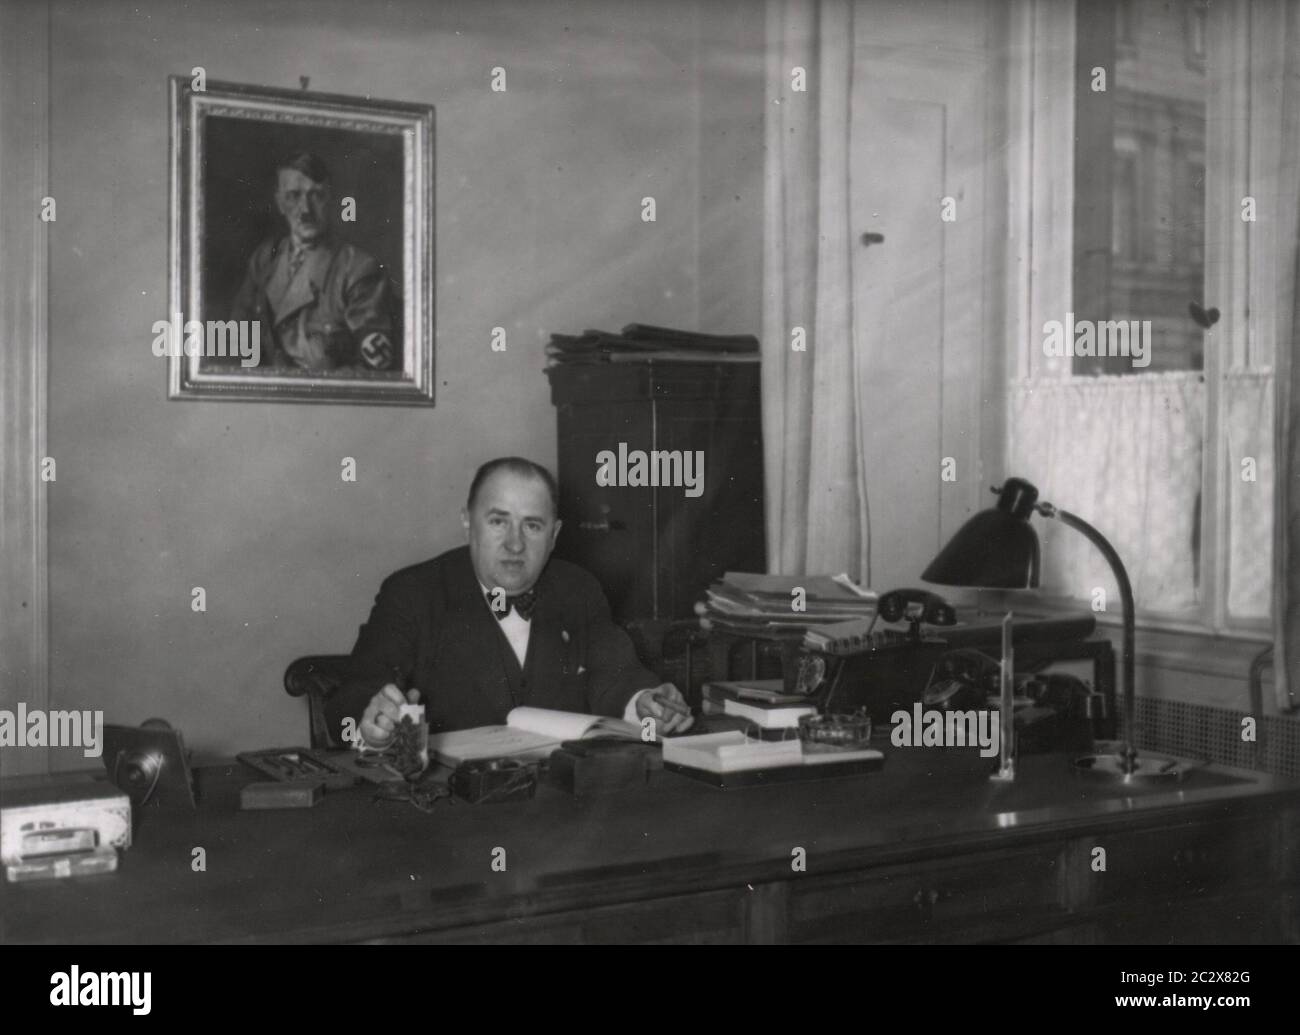 Il Ministro dell'Economia del Reich Funk Heinrich Hoffmann fotografa 1933 il fotografo ufficiale di Adolf Hitler, e un politico e editore nazista, che era un membro del circolo intimo di Hitler. Foto Stock